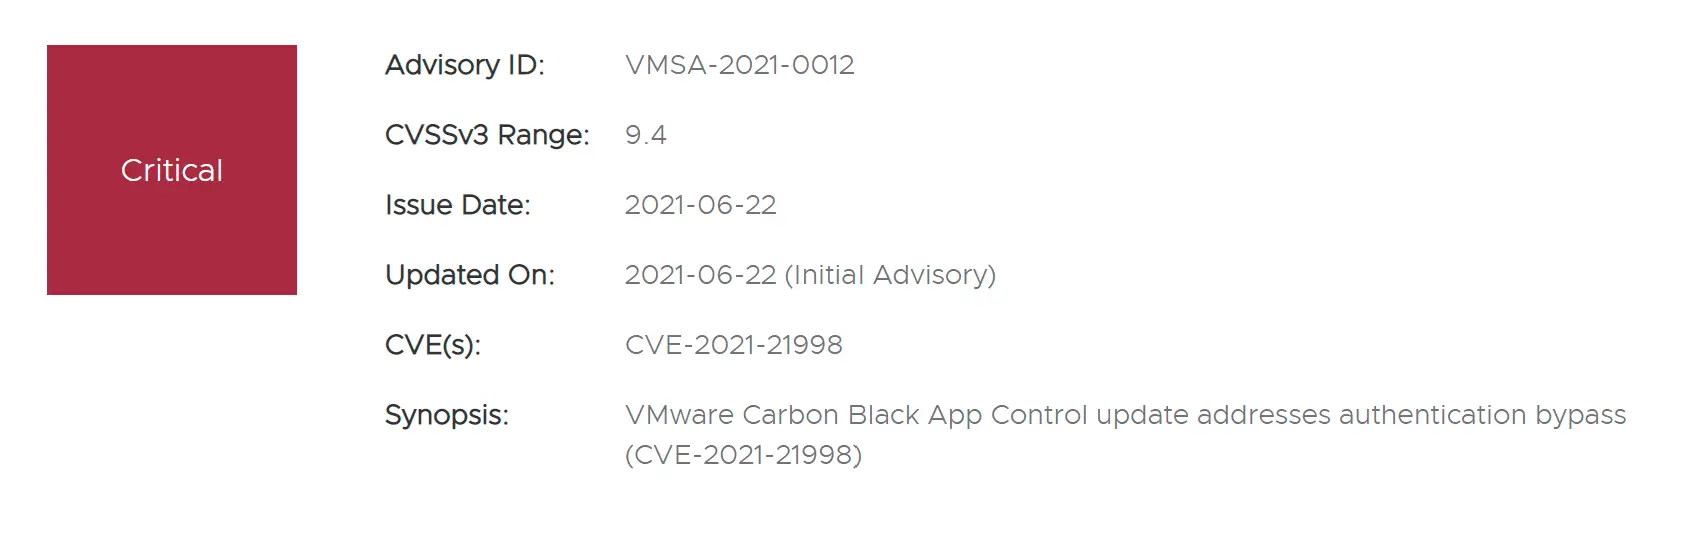 vmware carbon black app control